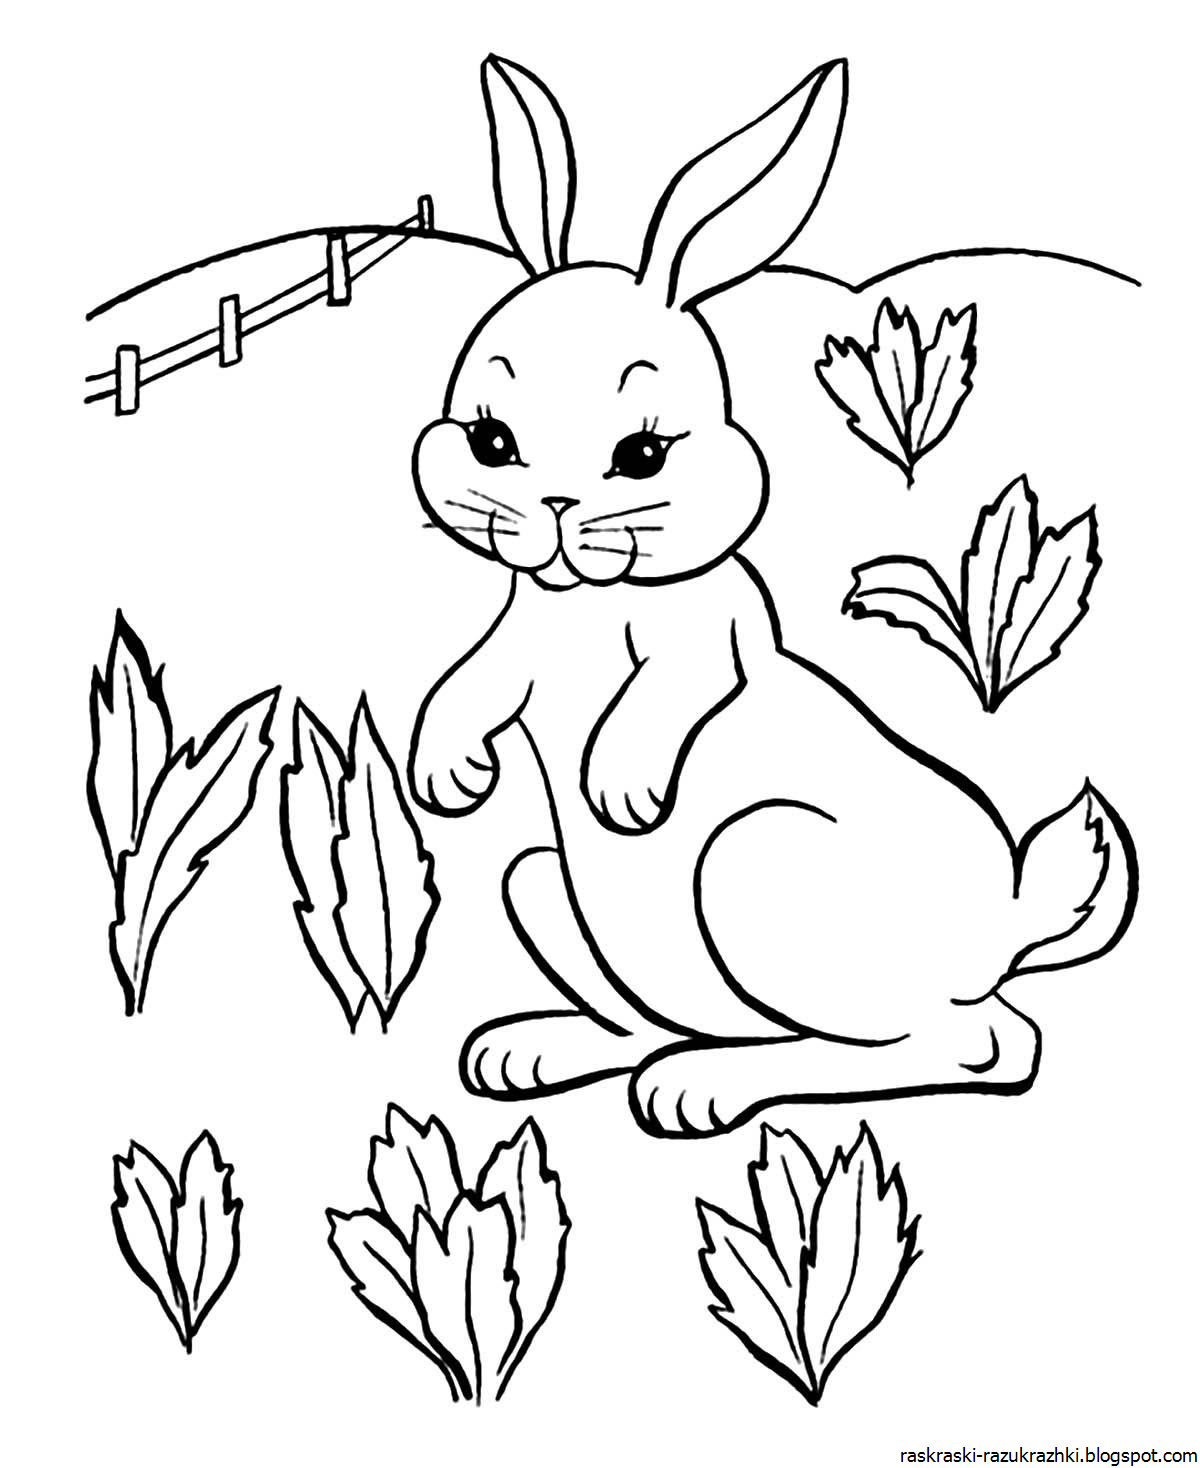 Картинка заяц для раскрашивания: Раскраски Заяц | Бесплатно распечатать ...